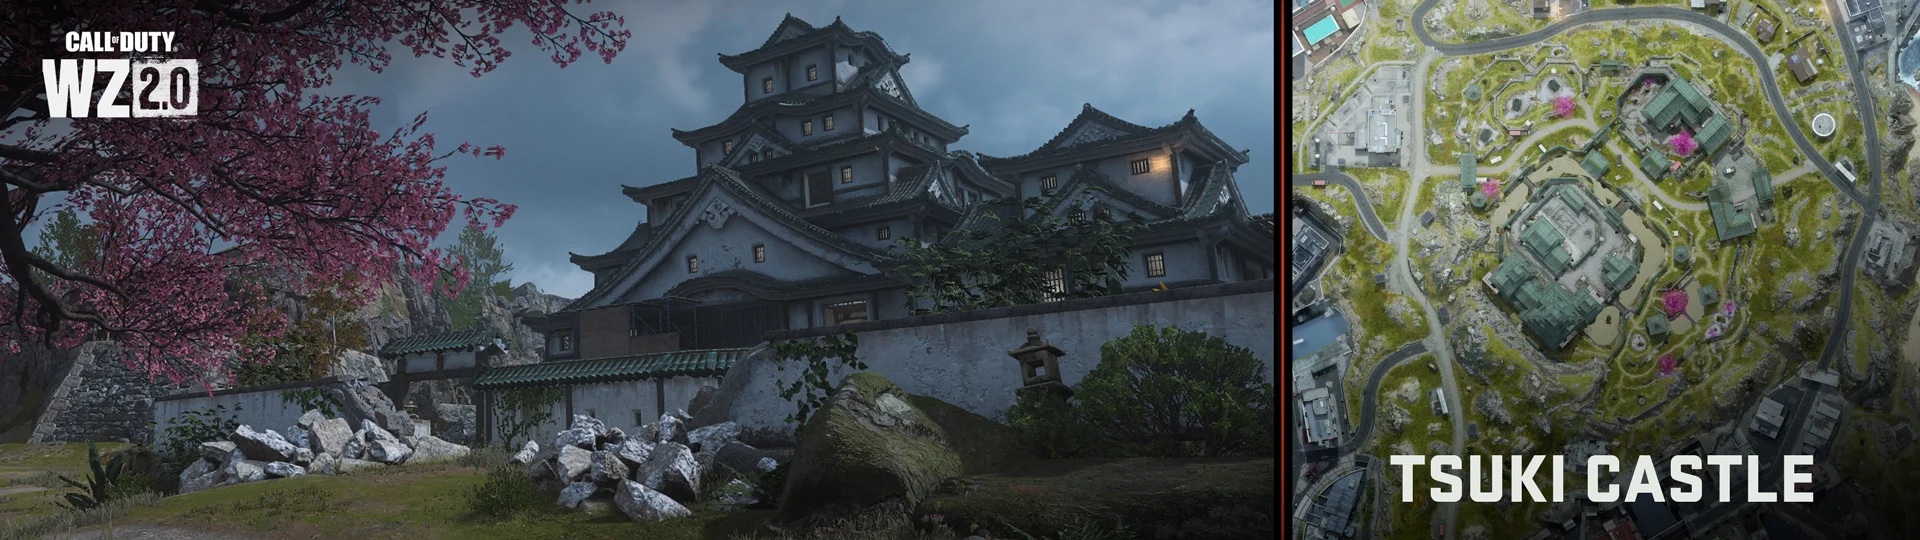 Авторы Call of Duty: Warzone 2 представили новую карту в японском стиле - фото 3